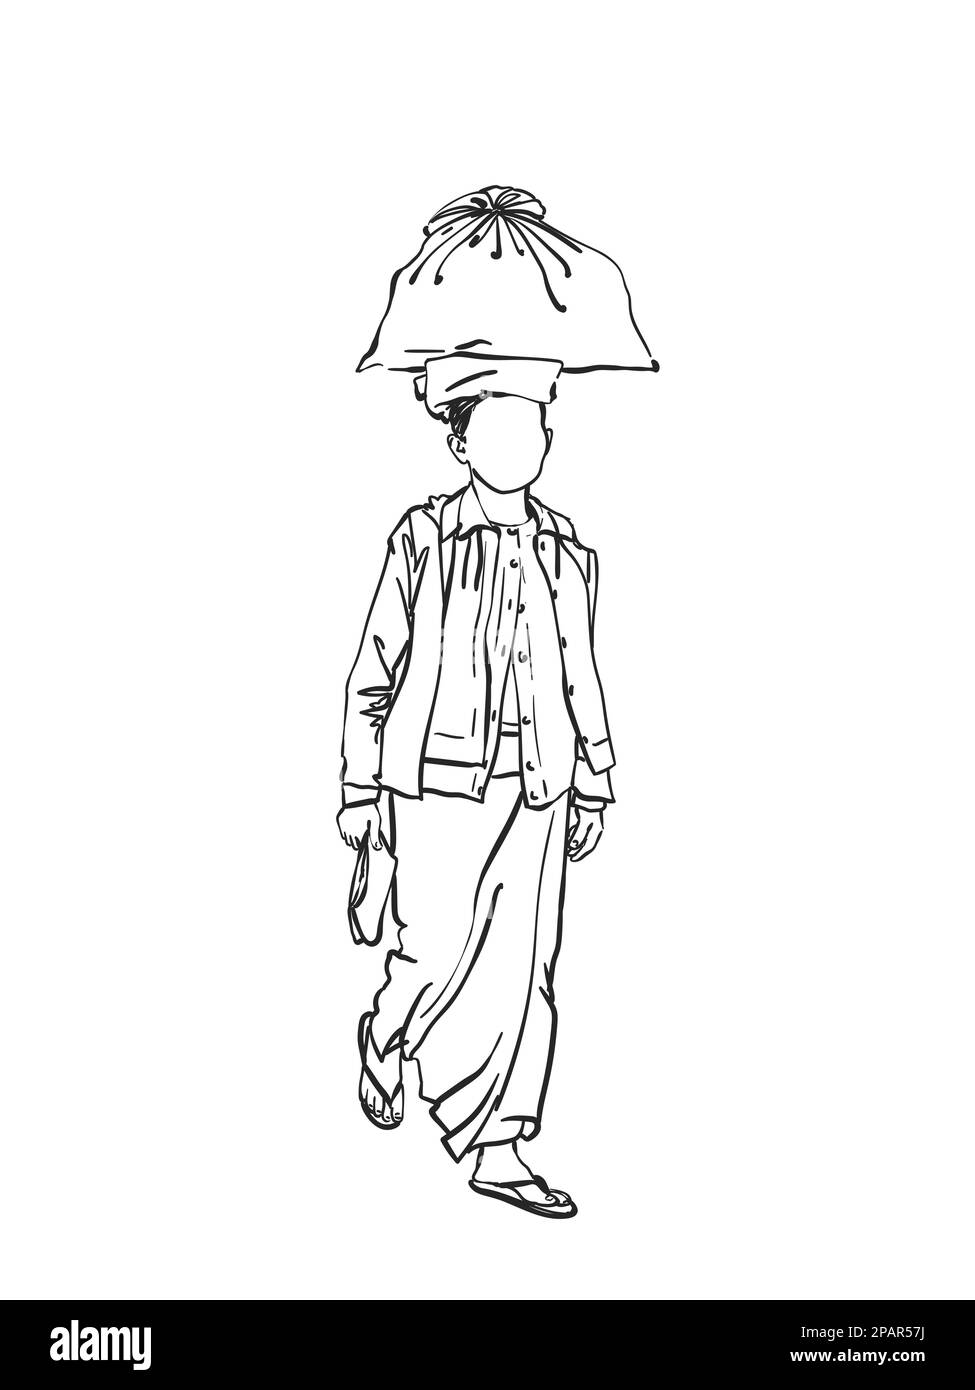 Une femme birmane sans visage porte un grand sac sur sa tête, un croquis vectoriel, une illustration linéaire dessinée à la main Illustration de Vecteur